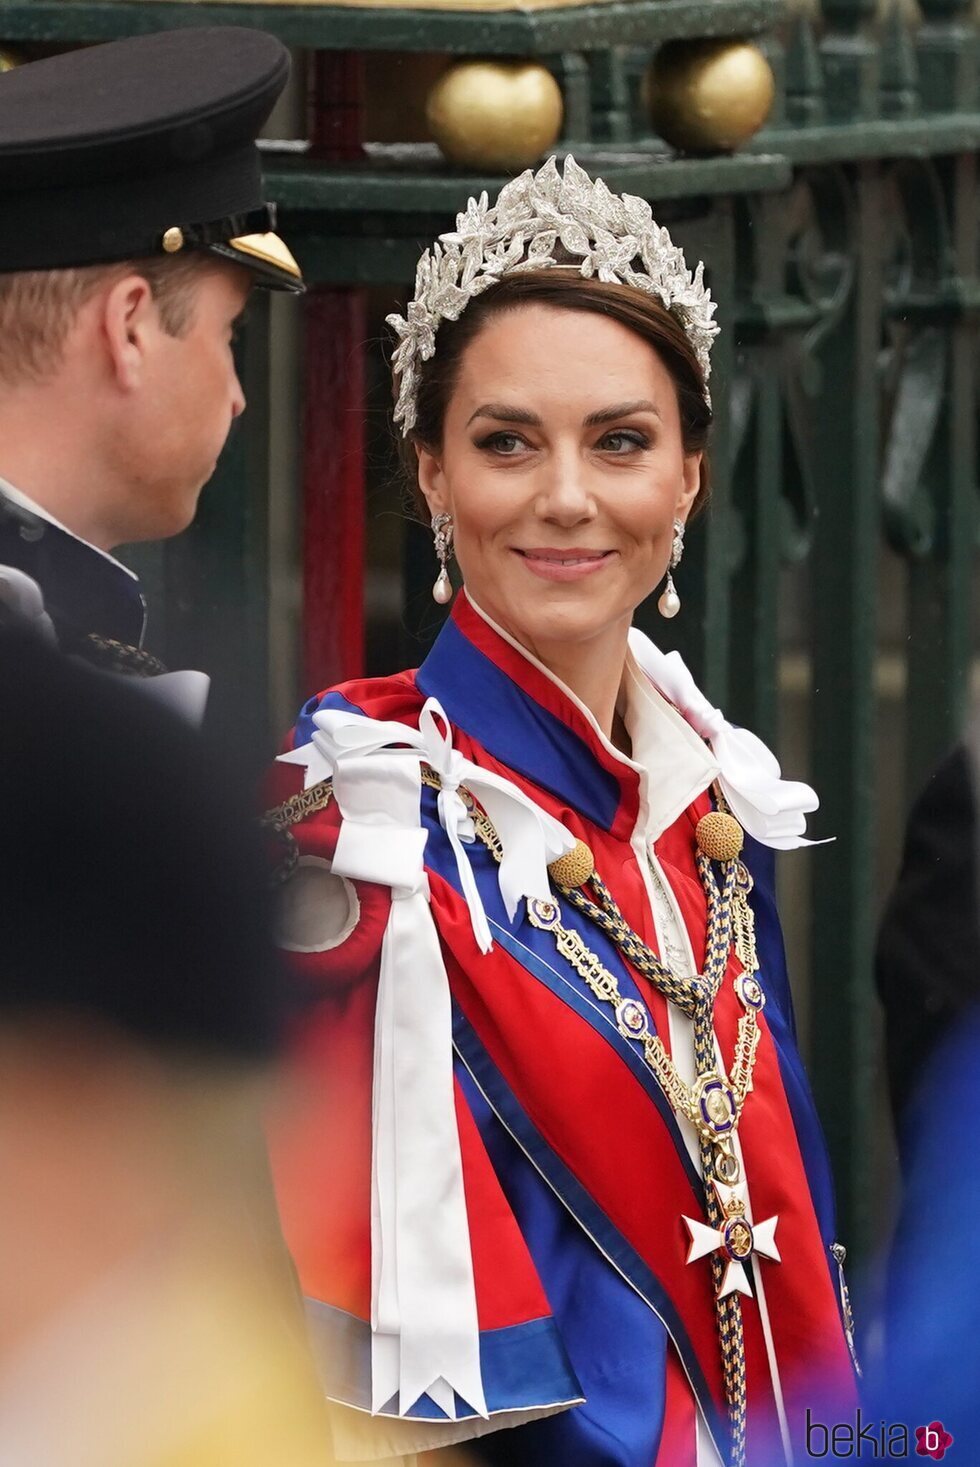 Kate Middleton, sonriente a la salida de la Coronación de Carlos III